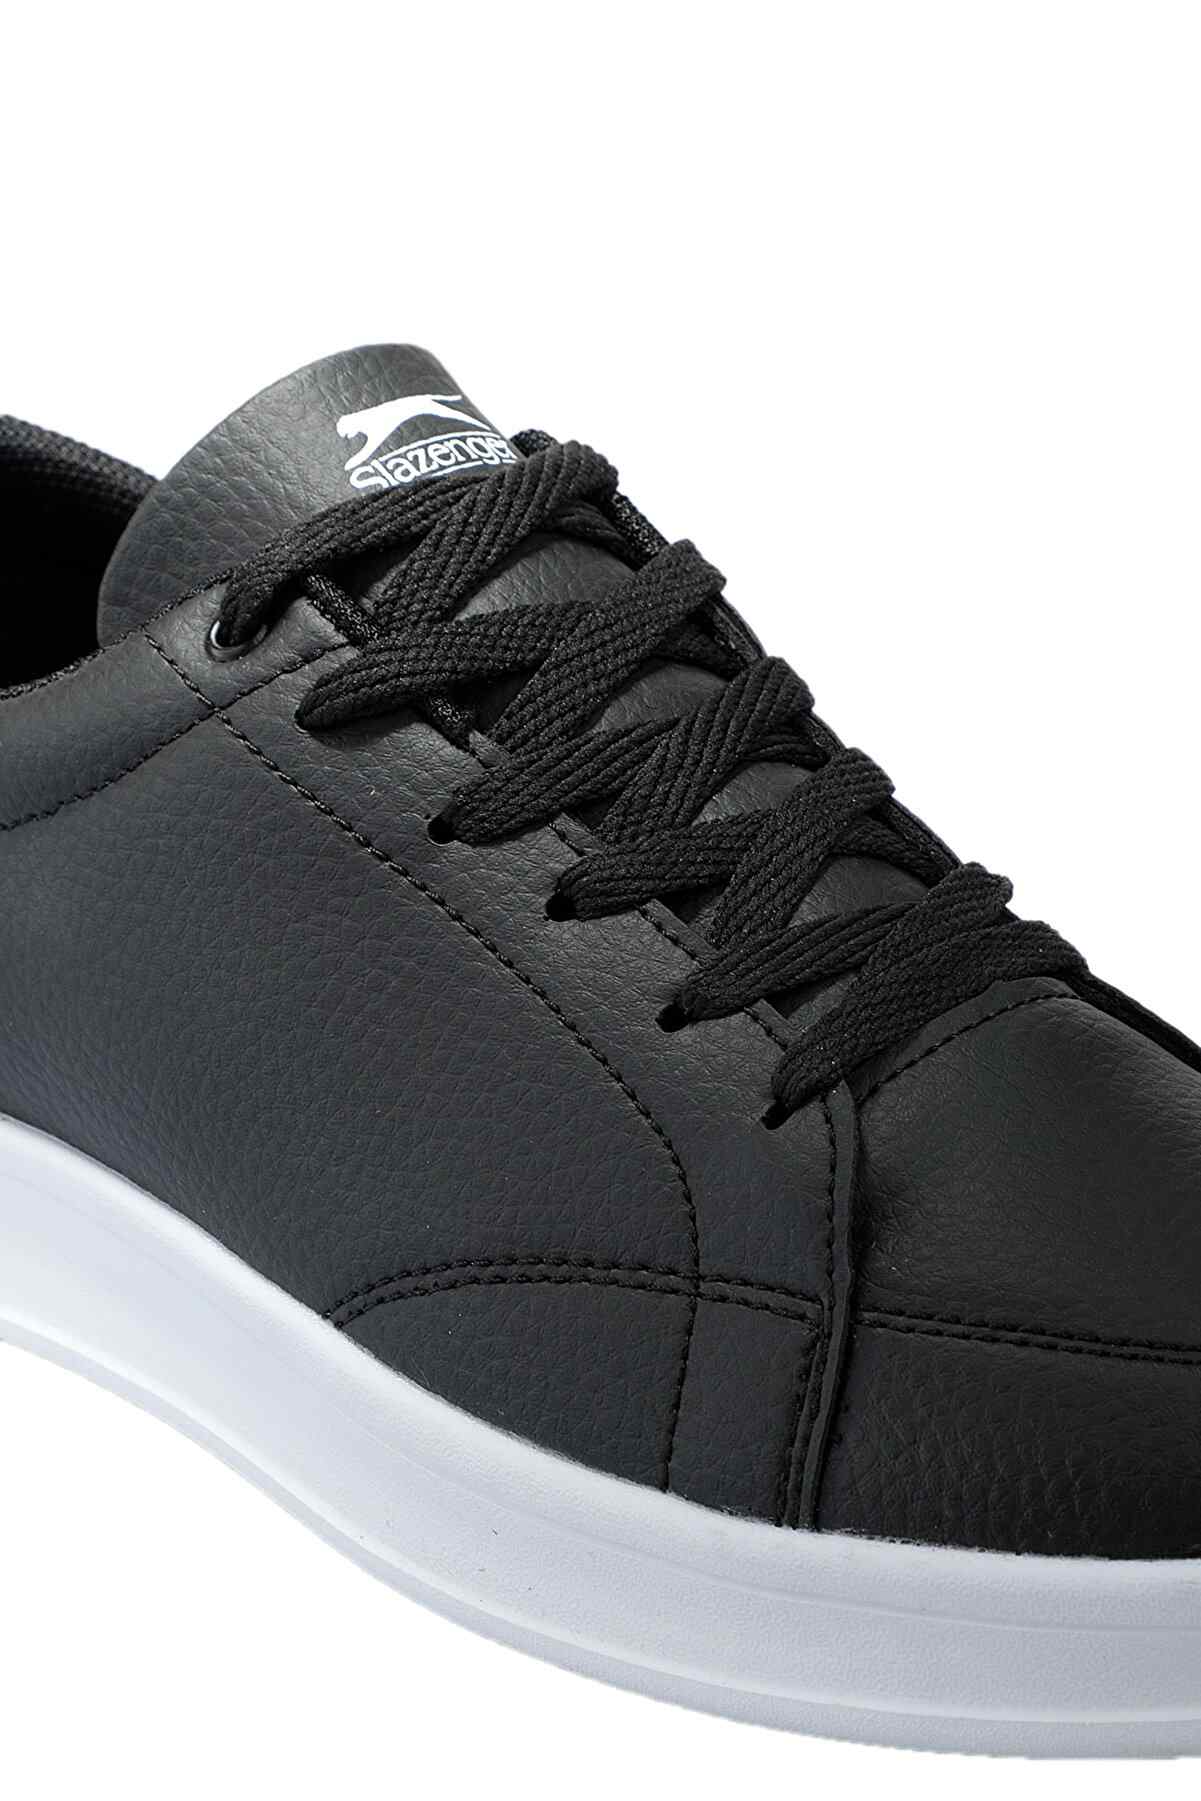 Slazenger Ola Sneaker Erkek Ayakkabı Siyah